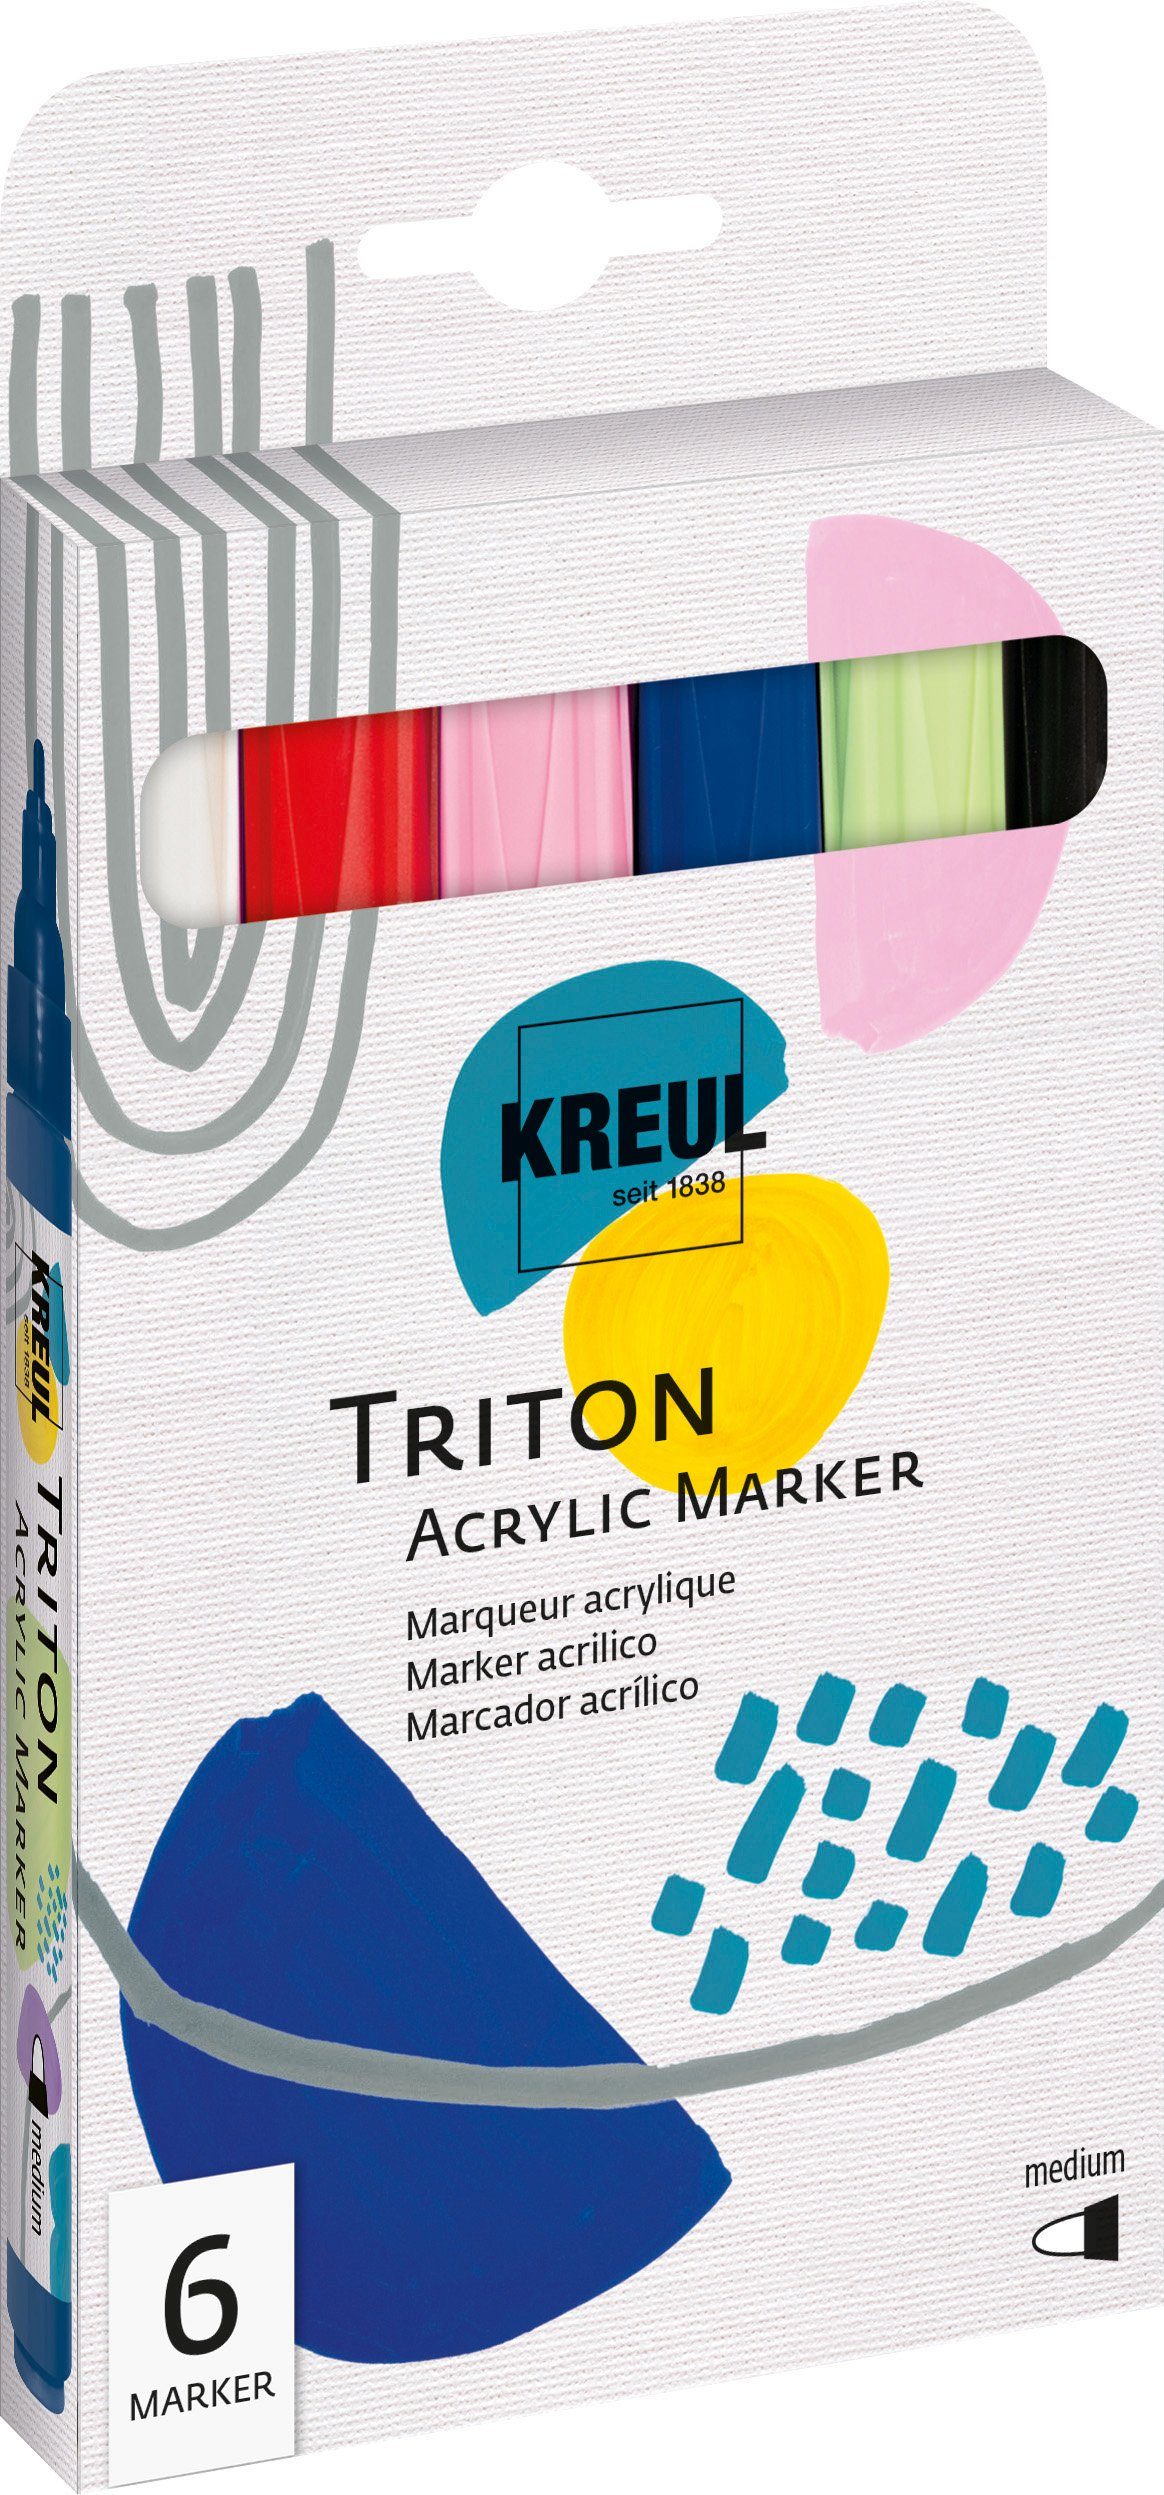 Kreul Marker Triton Acrylic Medium Marker